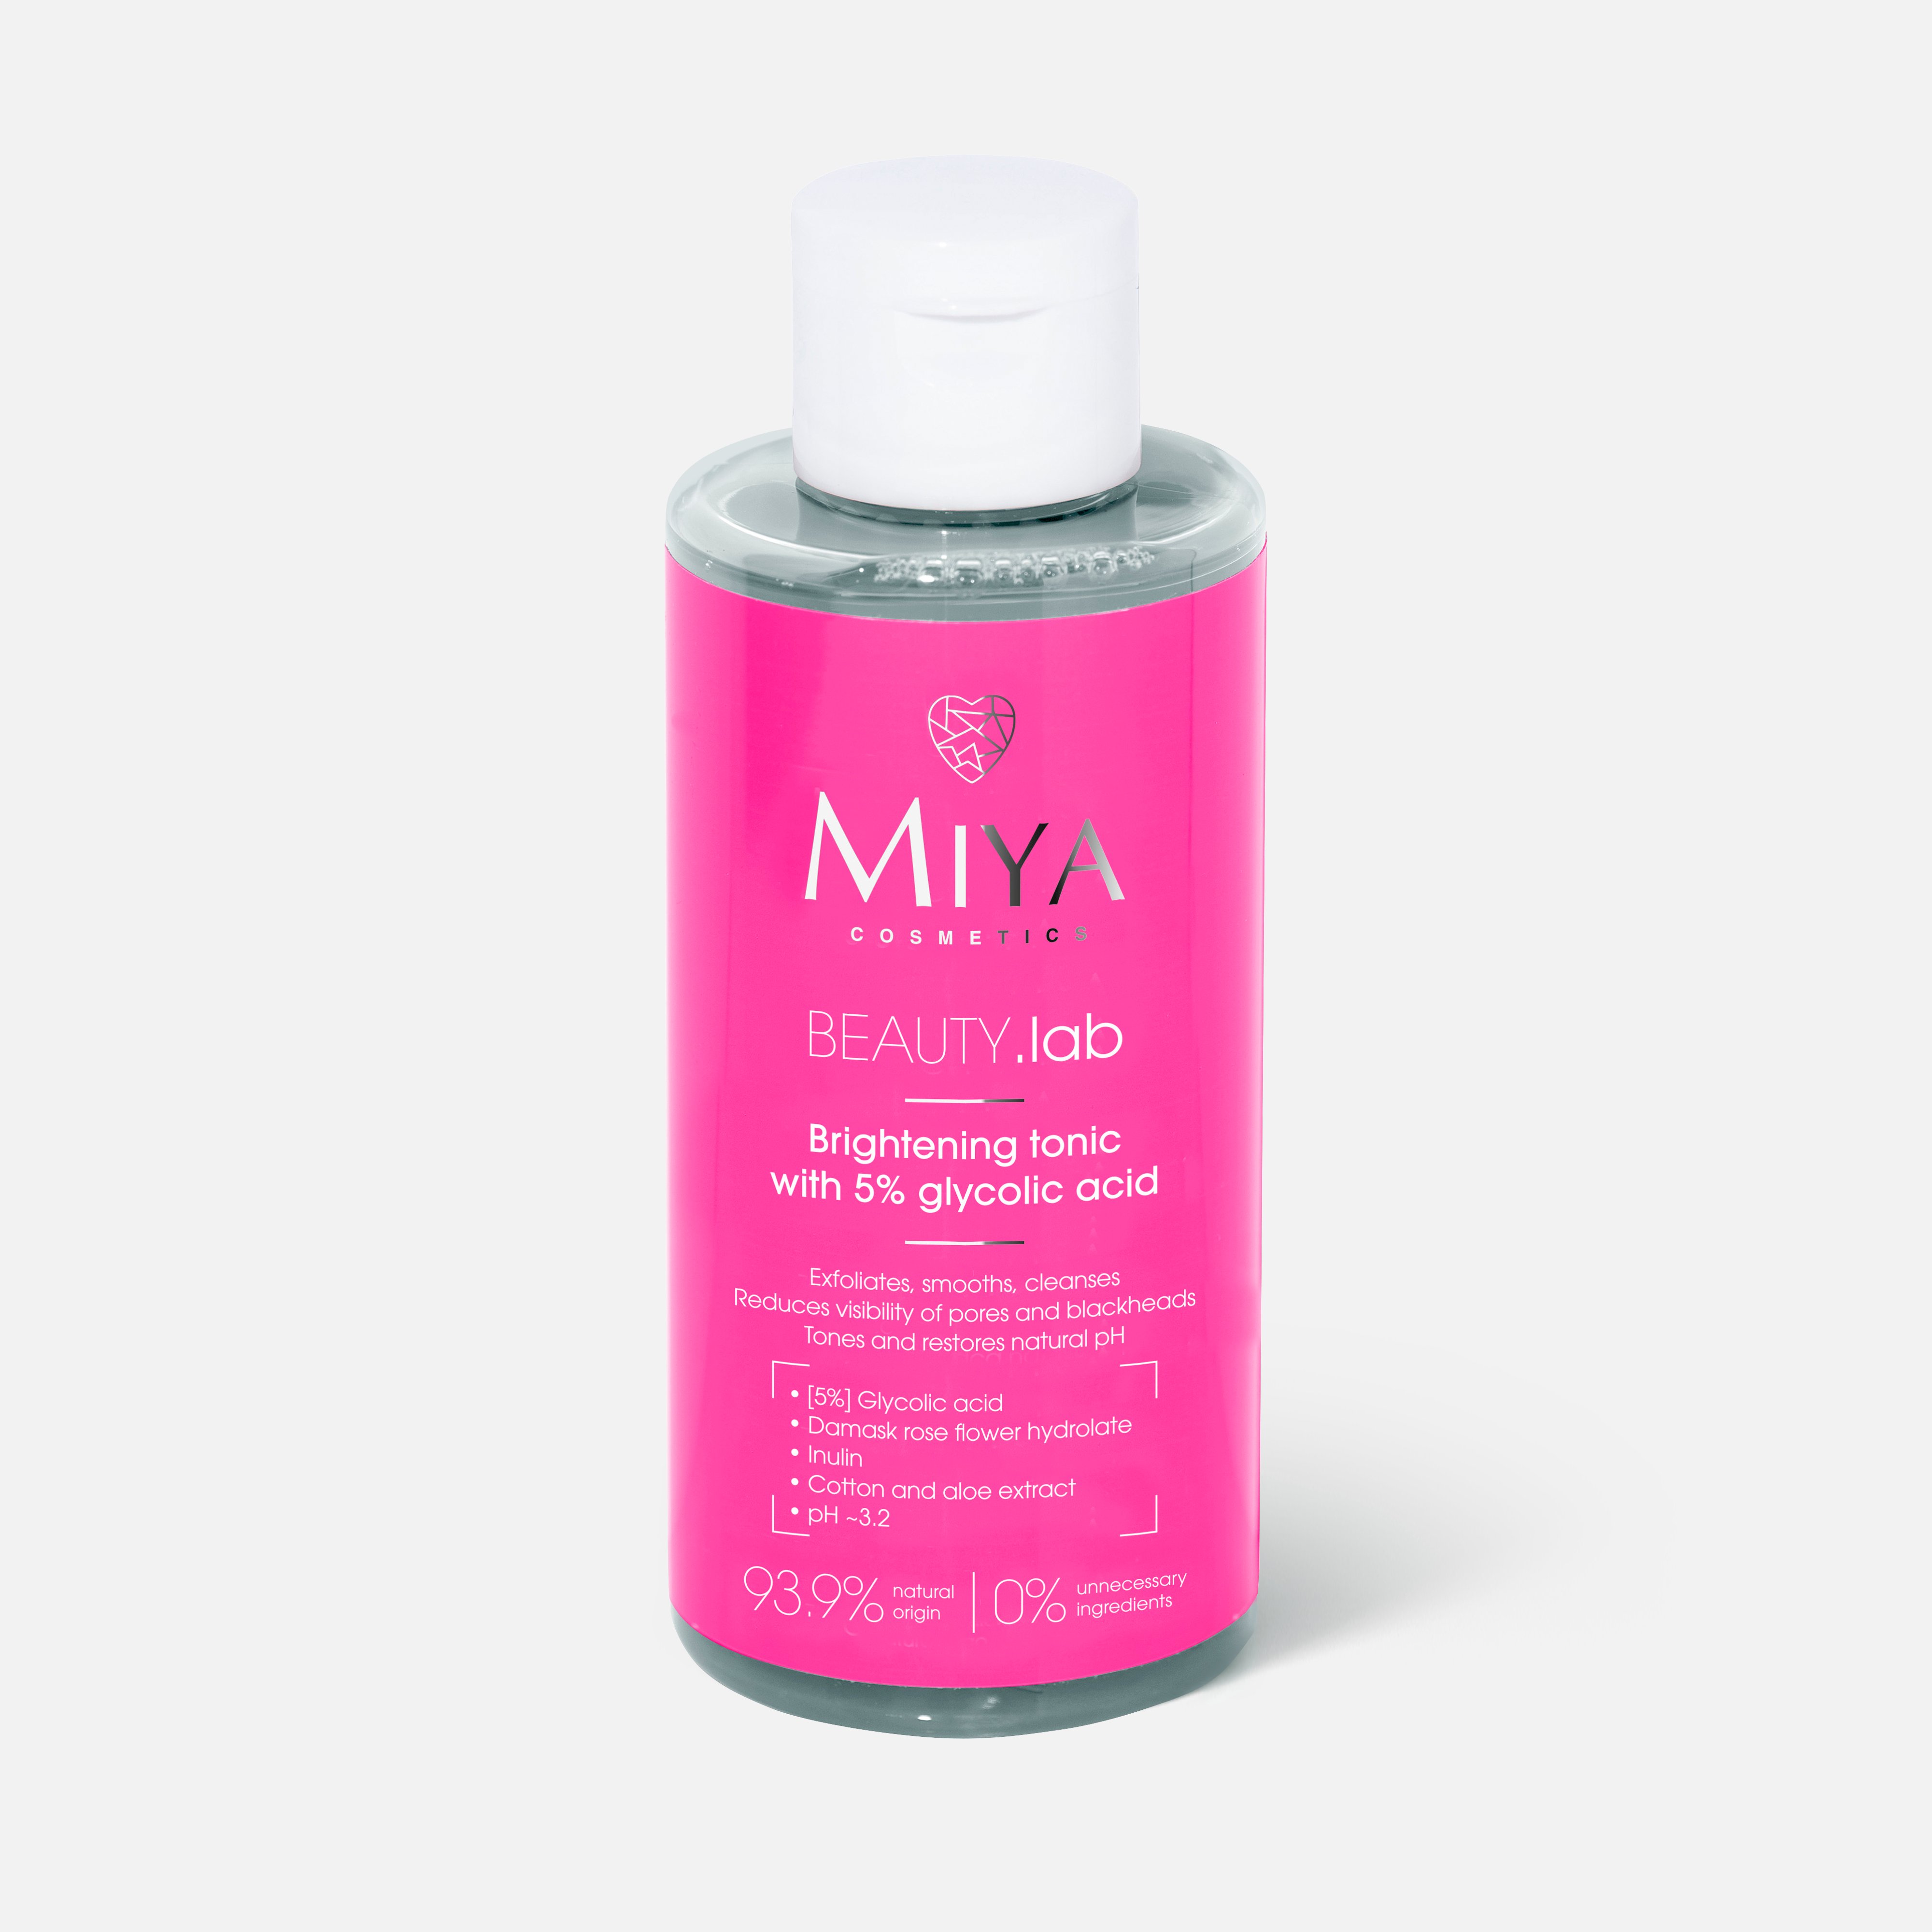 Тоник для лица Miya cosmetics Beauty.Lab Brightening, Glycolic acid 5%, 150 мл janssen cosmetics очищающий и сужающий поры тоник 200 мл